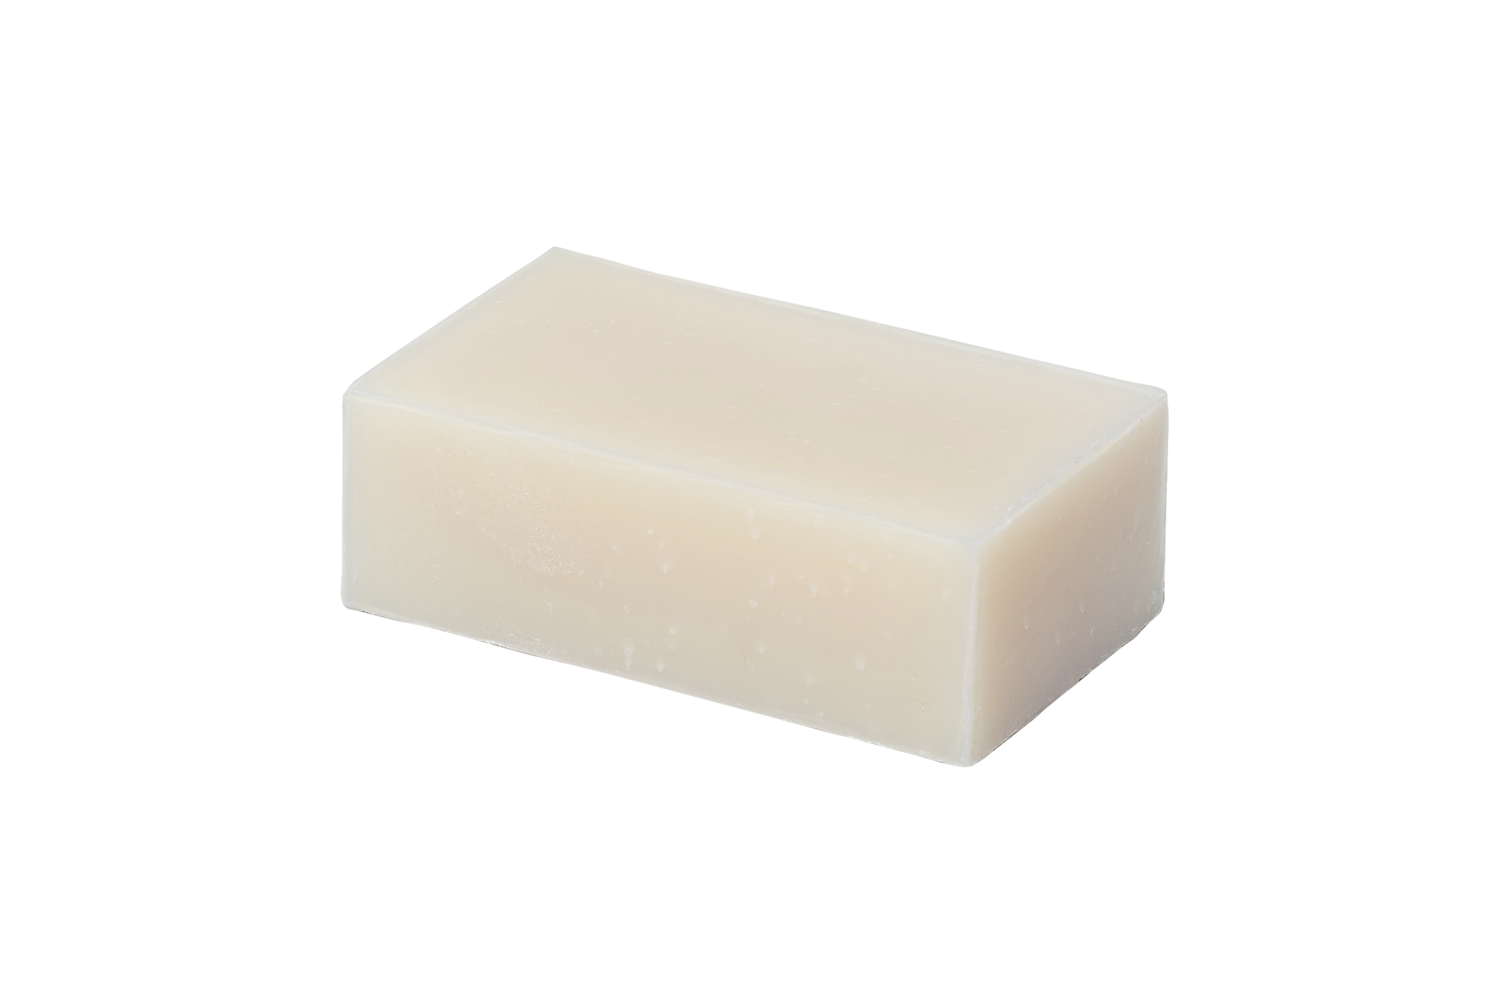 4 oz unscented soap bar